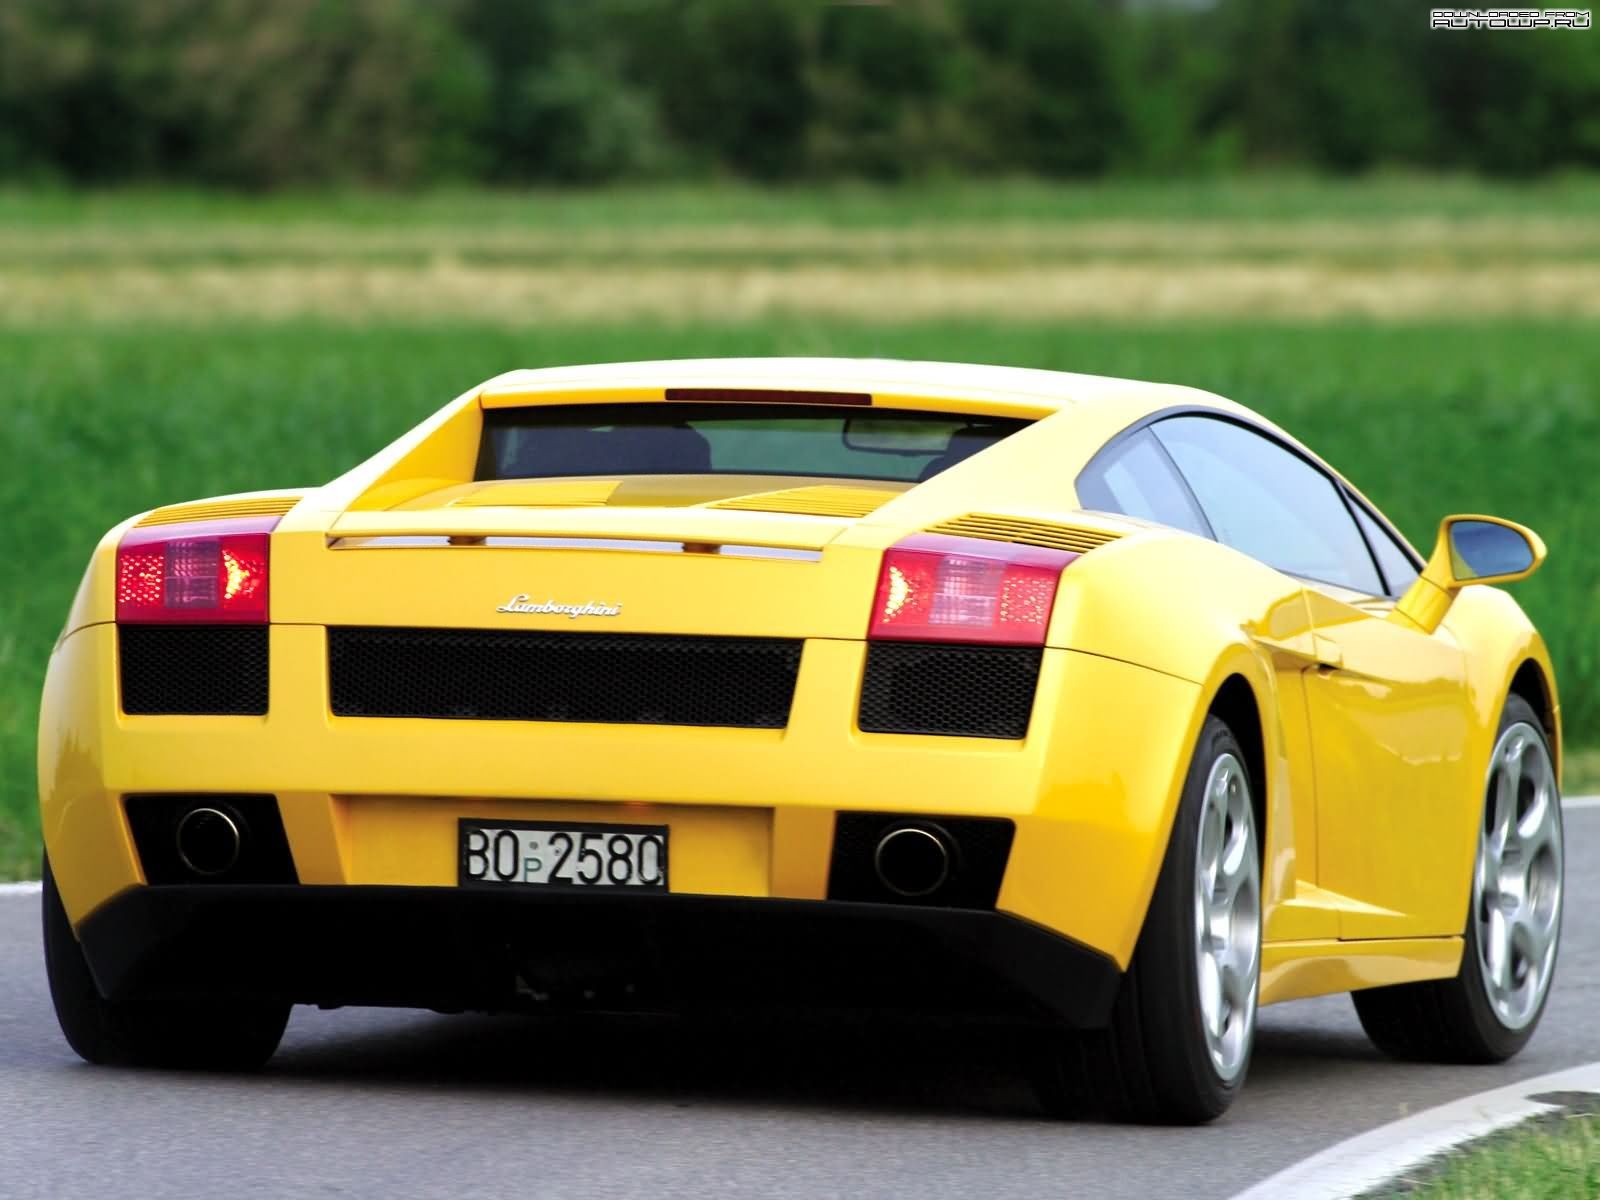 General 1600x1200 car yellow cars Lamborghini vehicle numbers Lamborghini Gallardo italian cars Volkswagen Group